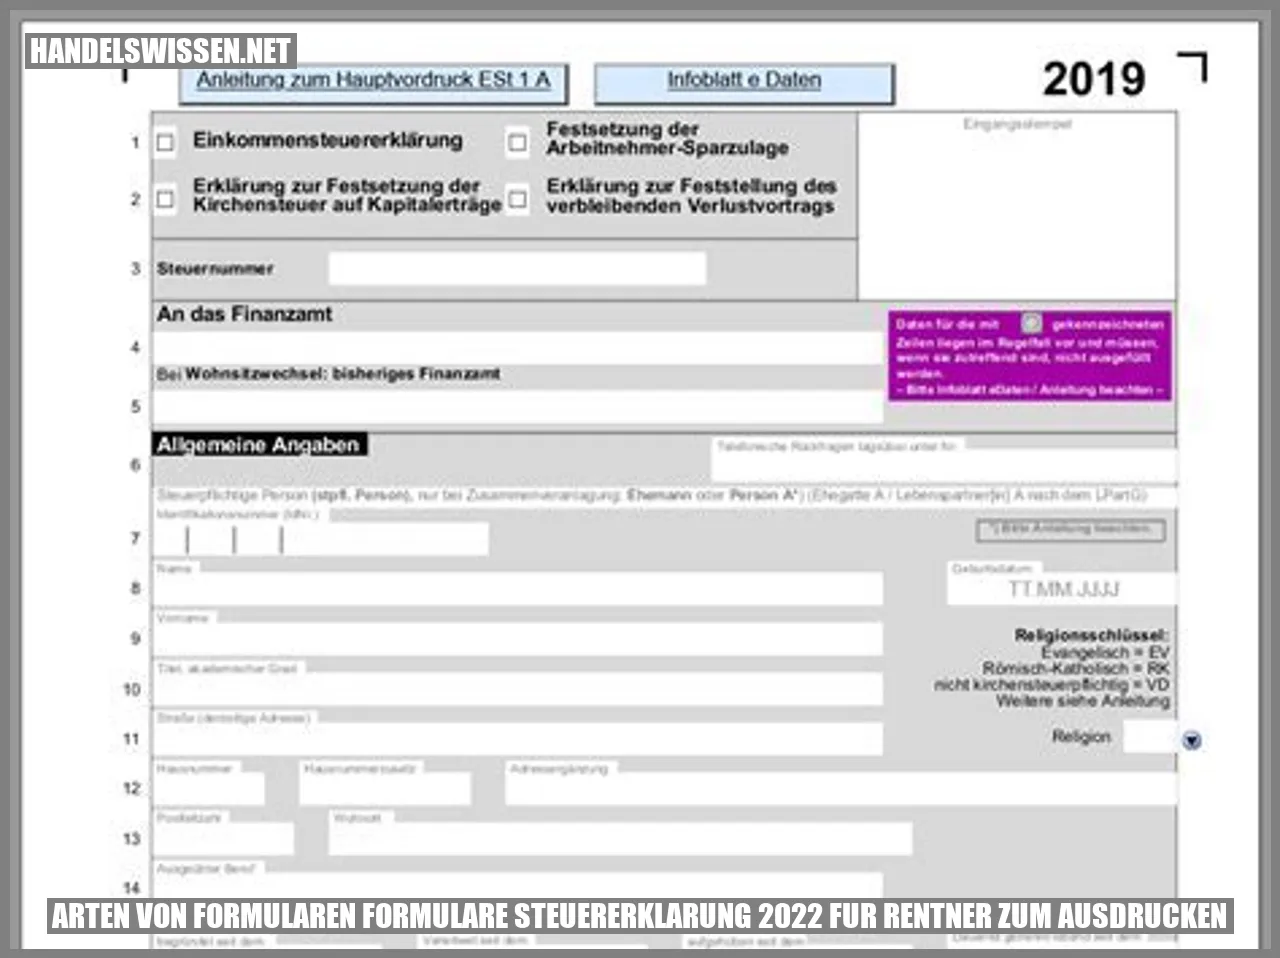 Bild von Formularen für die Steuererklärung